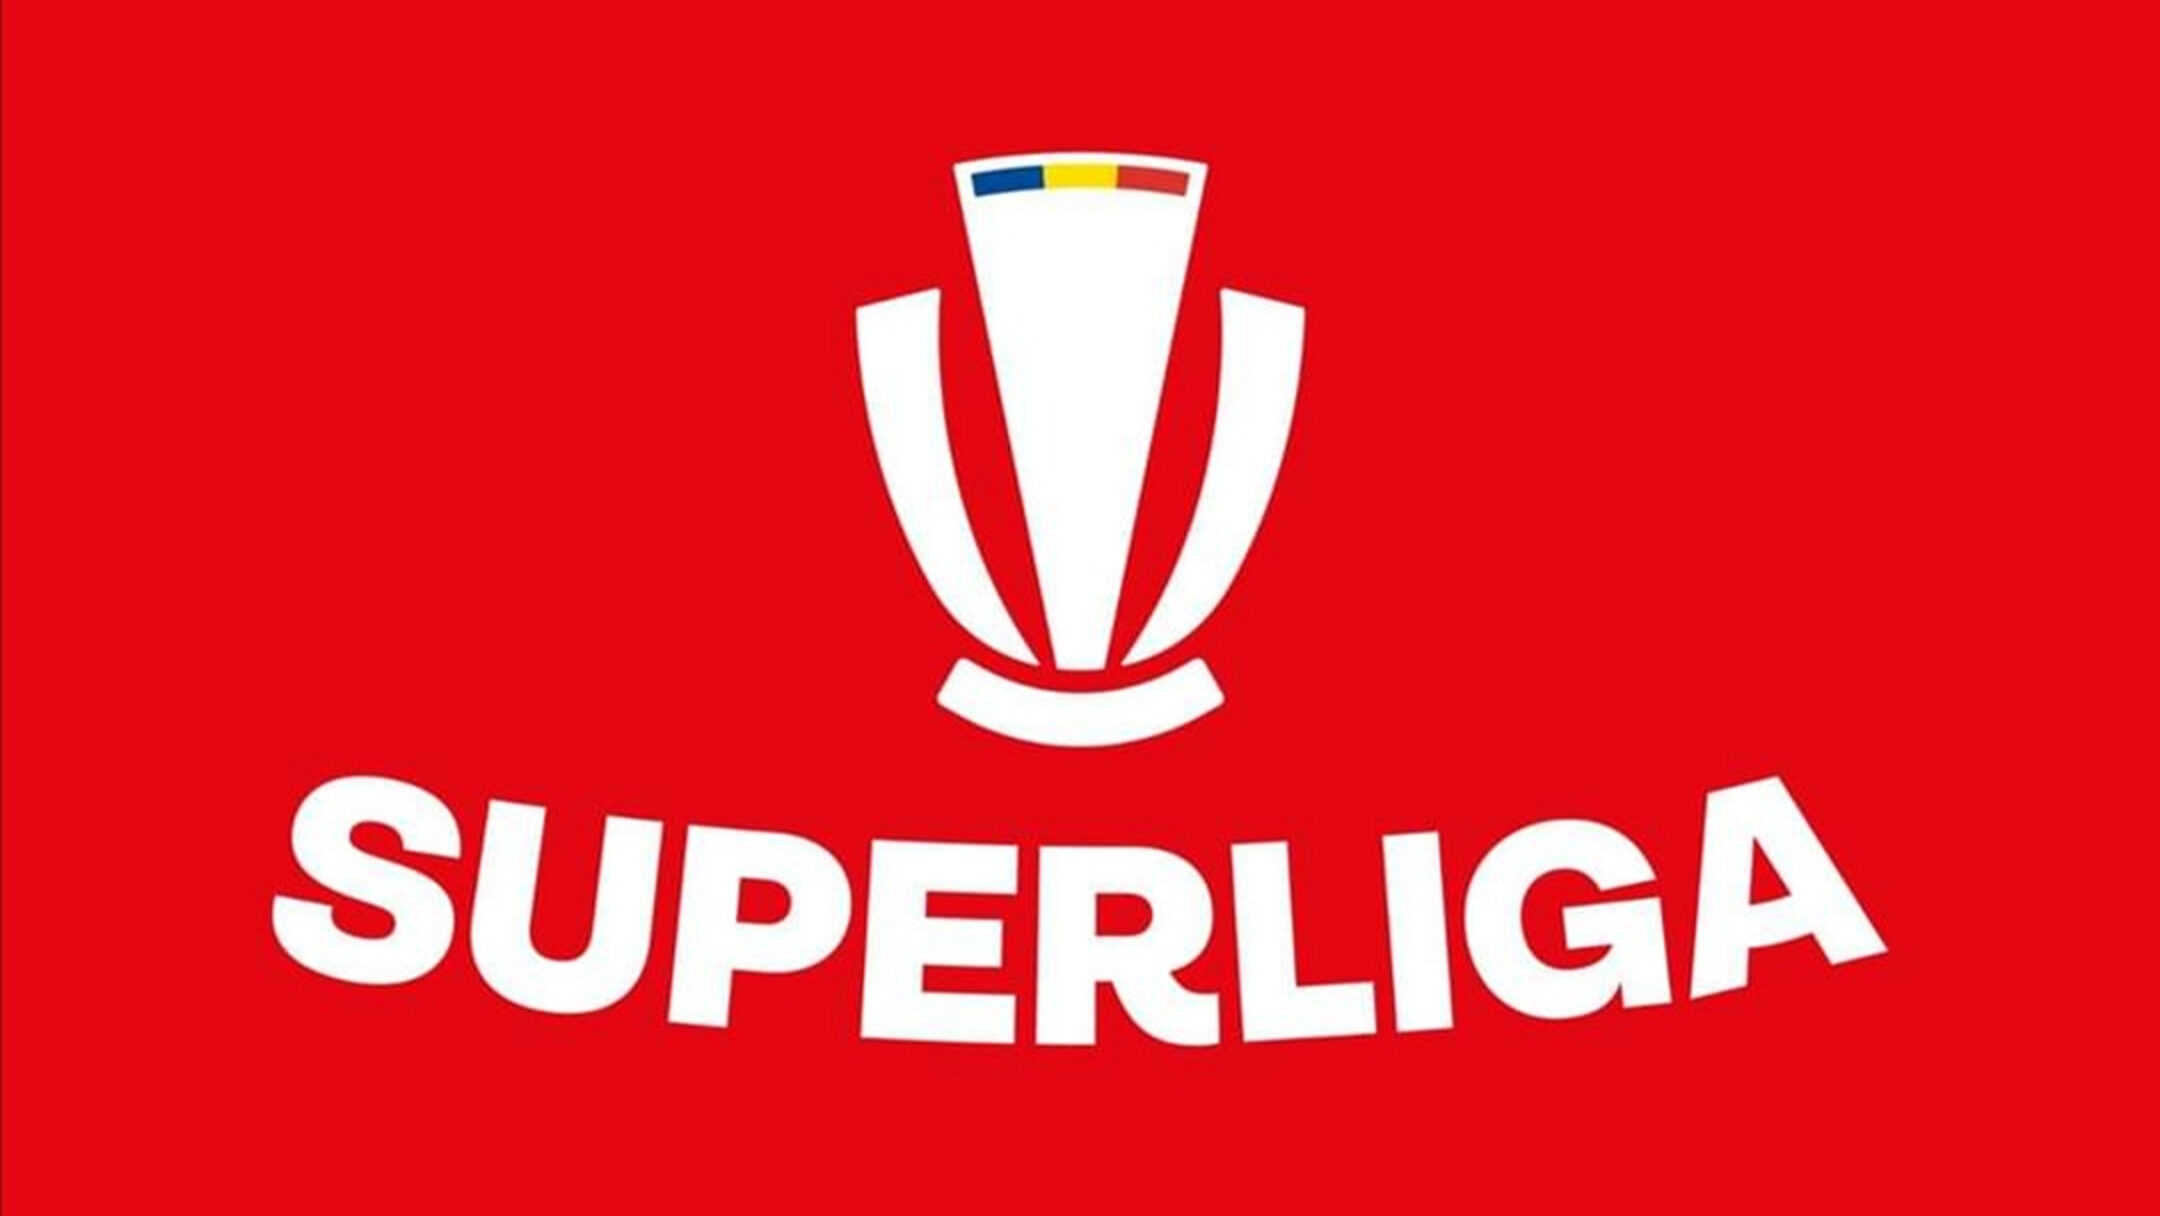 Superliga